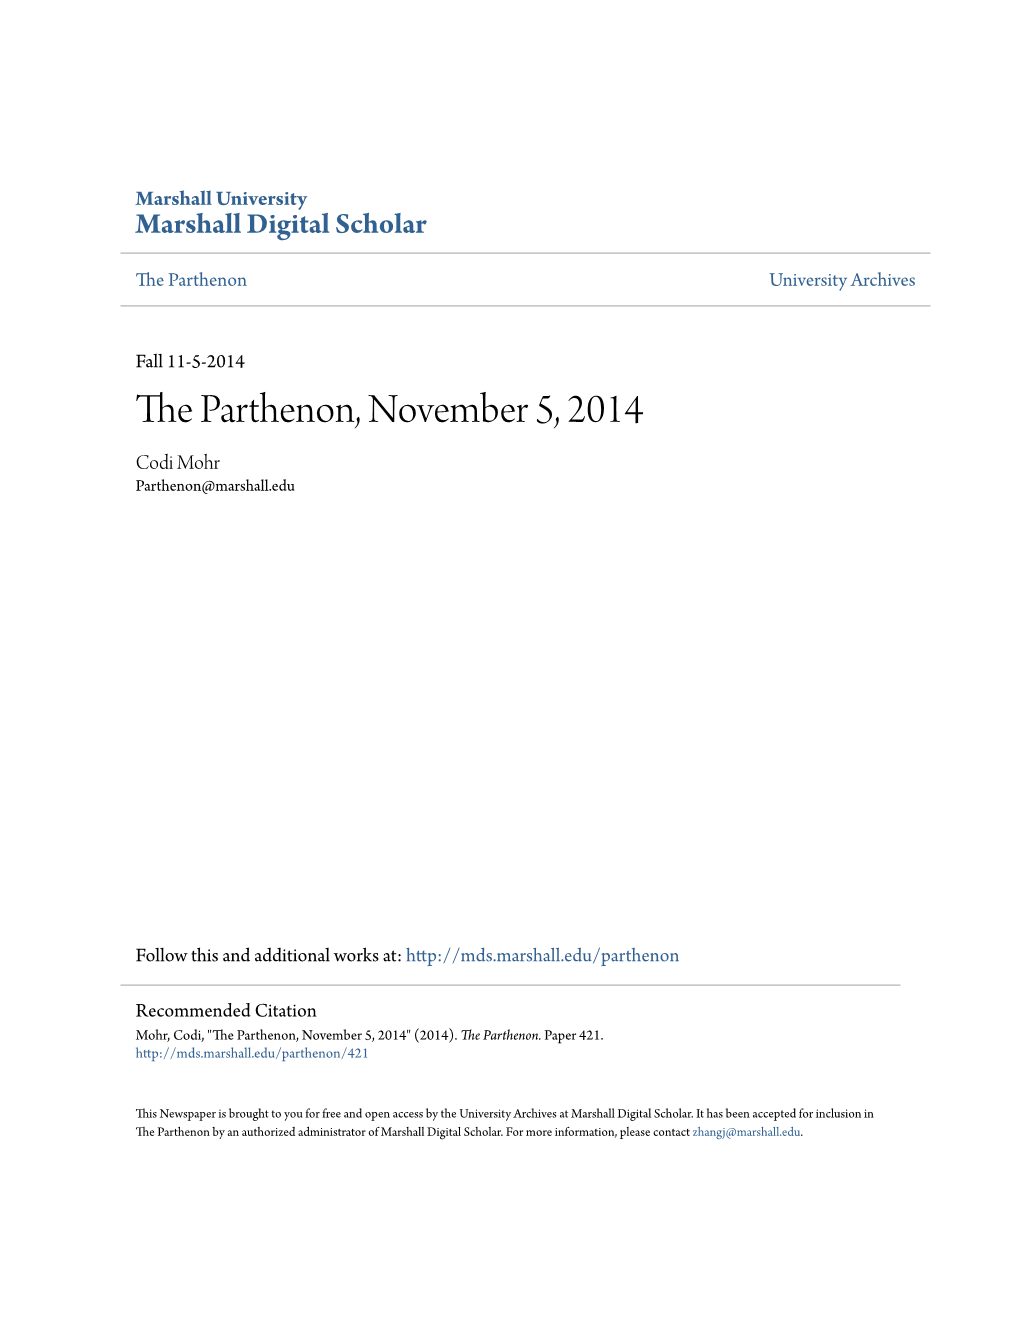 The Parthenon, November 5, 2014